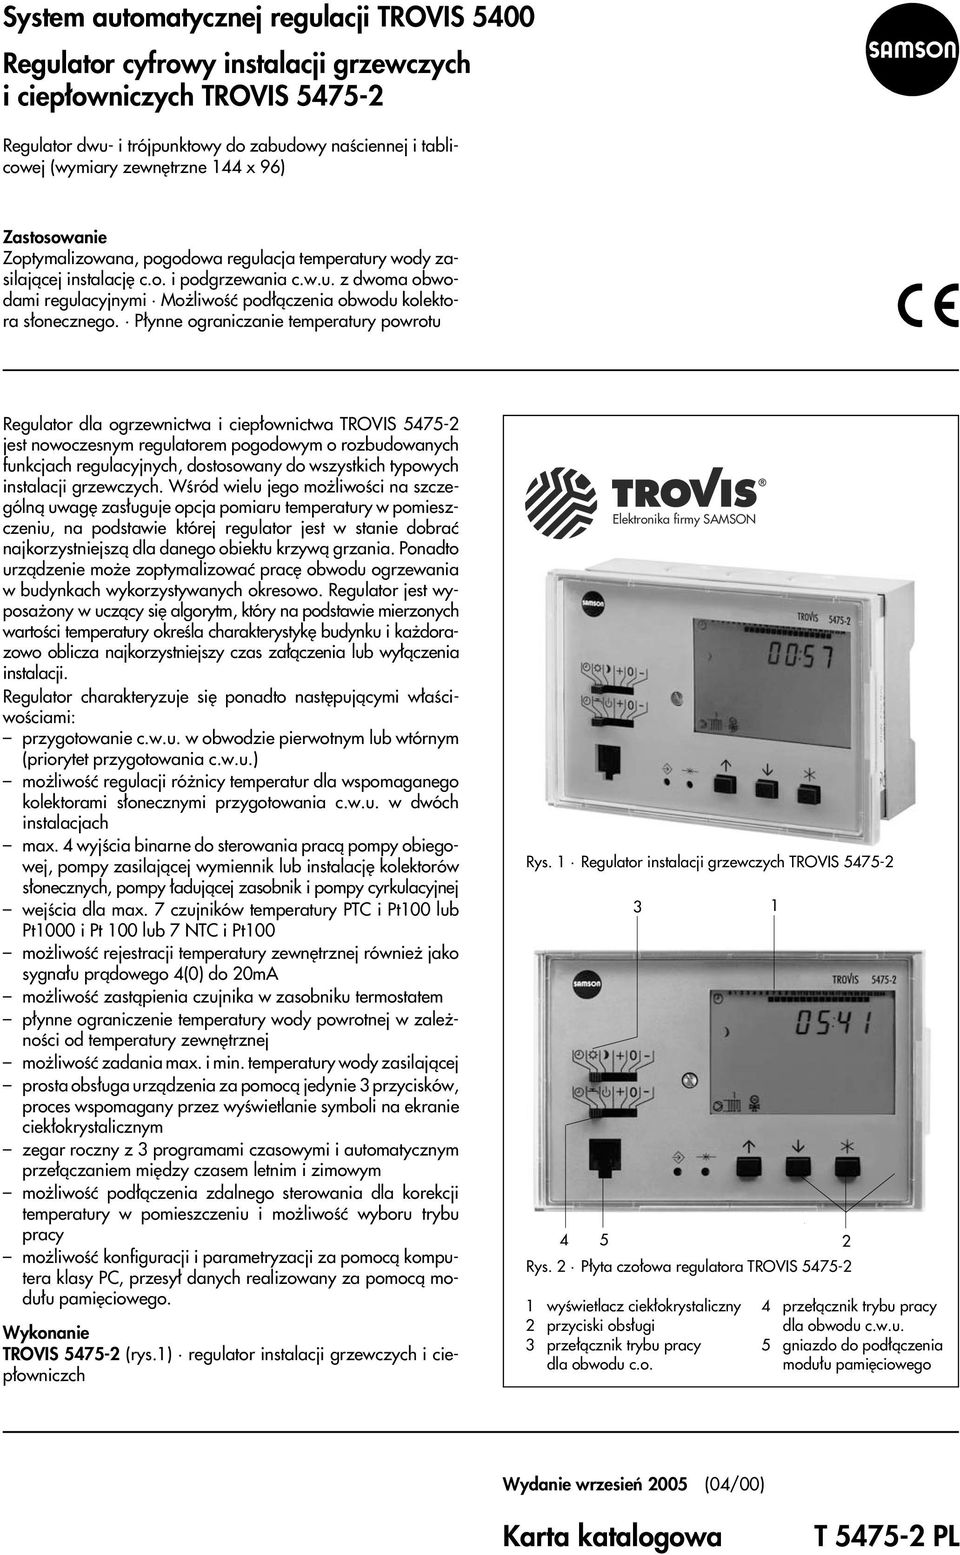 P³ynne ograniczanie temperatury powrotu Regulator dla ogrzewnictwa i ciep³ownictwa TROVIS 5475-2 jest nowoczesnym regulatorem pogodowym o rozbudowanych funkcjach regulacyjnych, dostosowany do